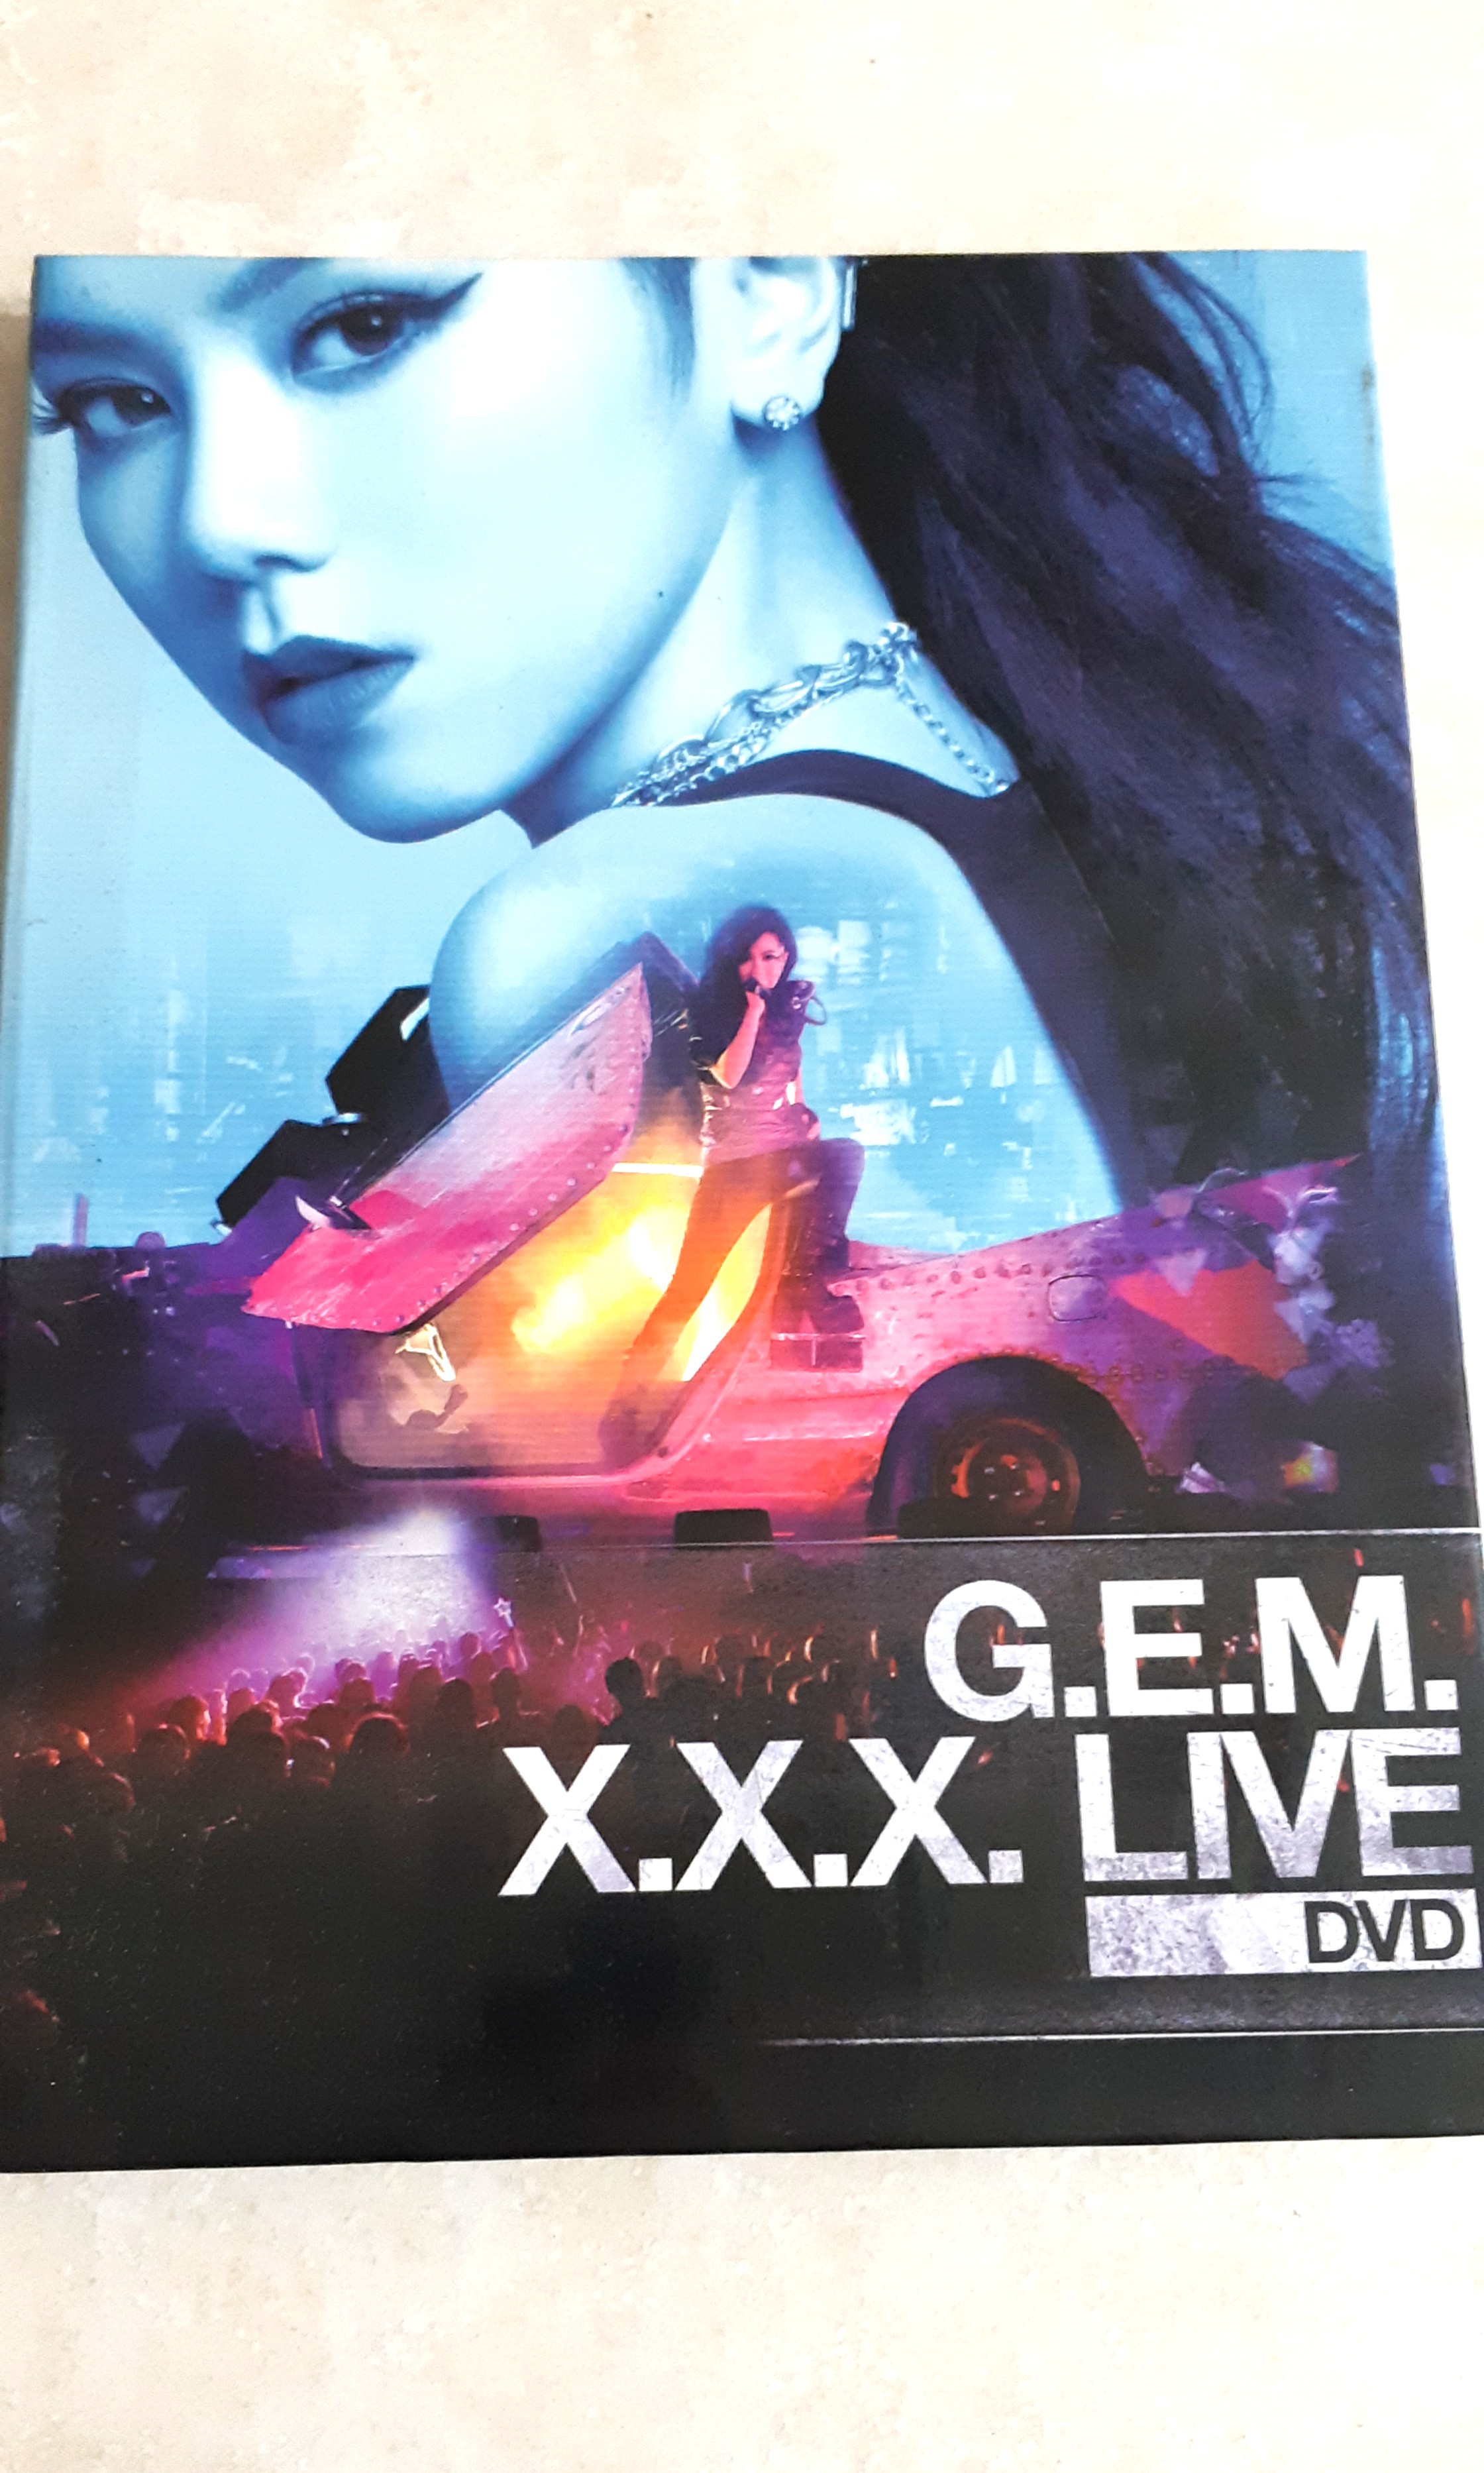 GEM Tang 鄧紫棋XXX Concert DVD Live, Hobbies & Toys, Music 